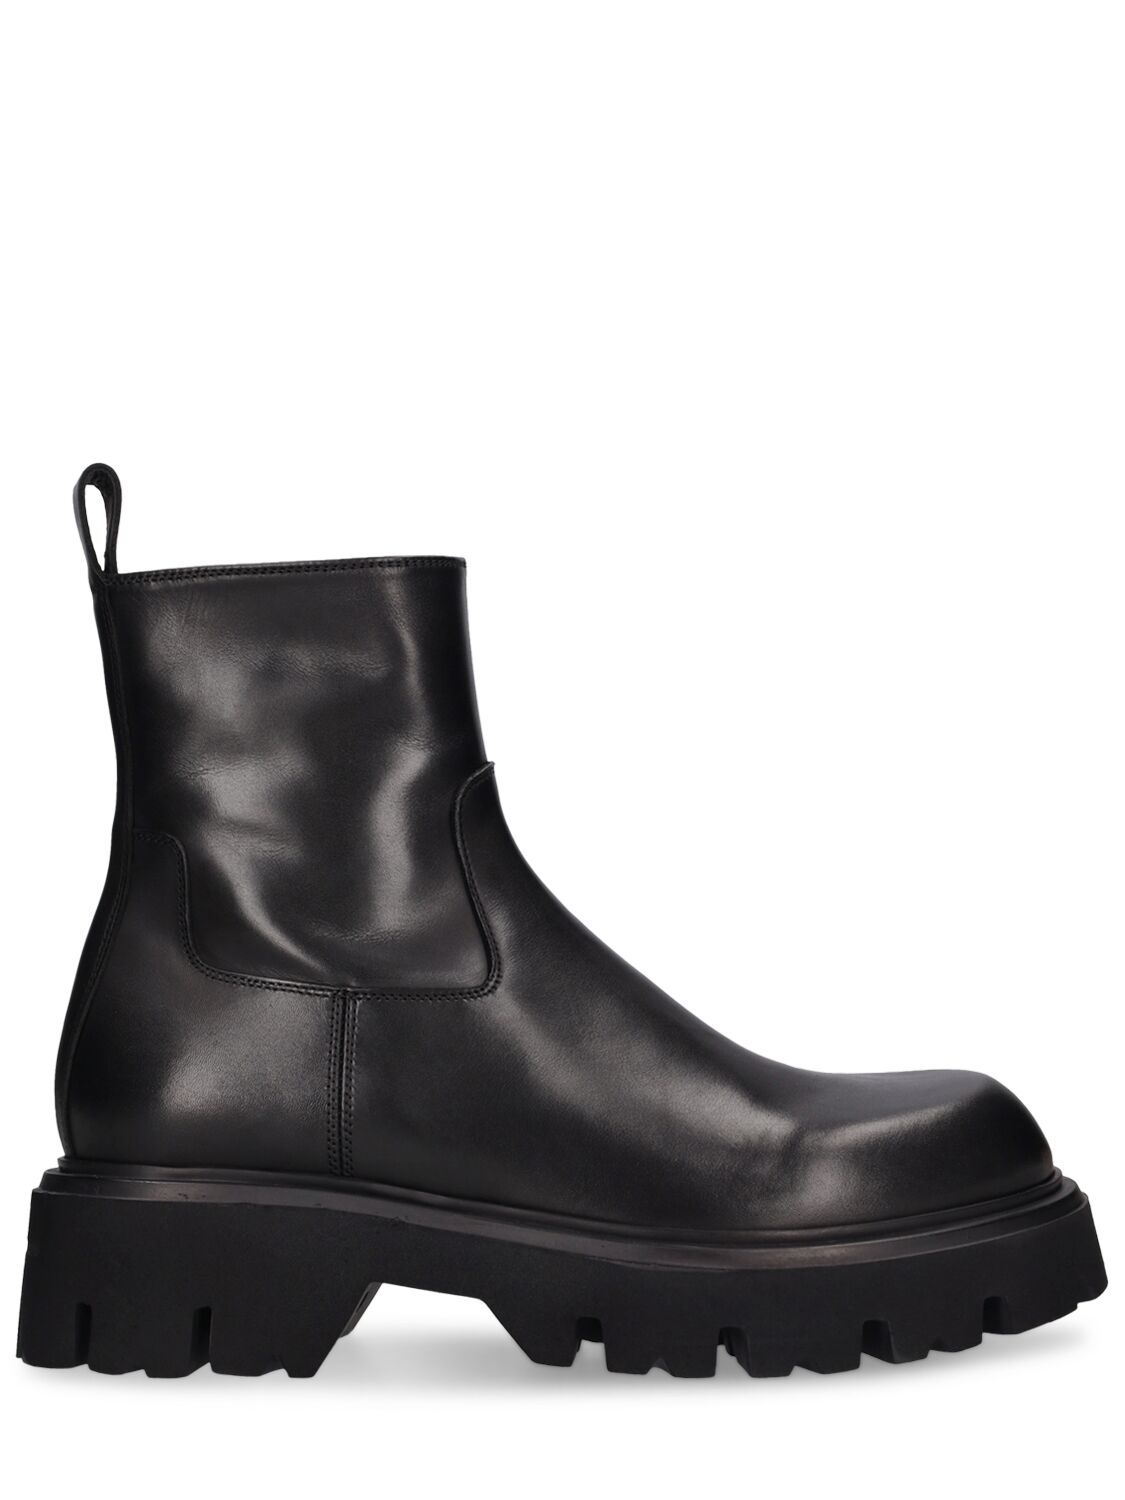 Mattia Capezzani Leather Chelsea Boots In Black